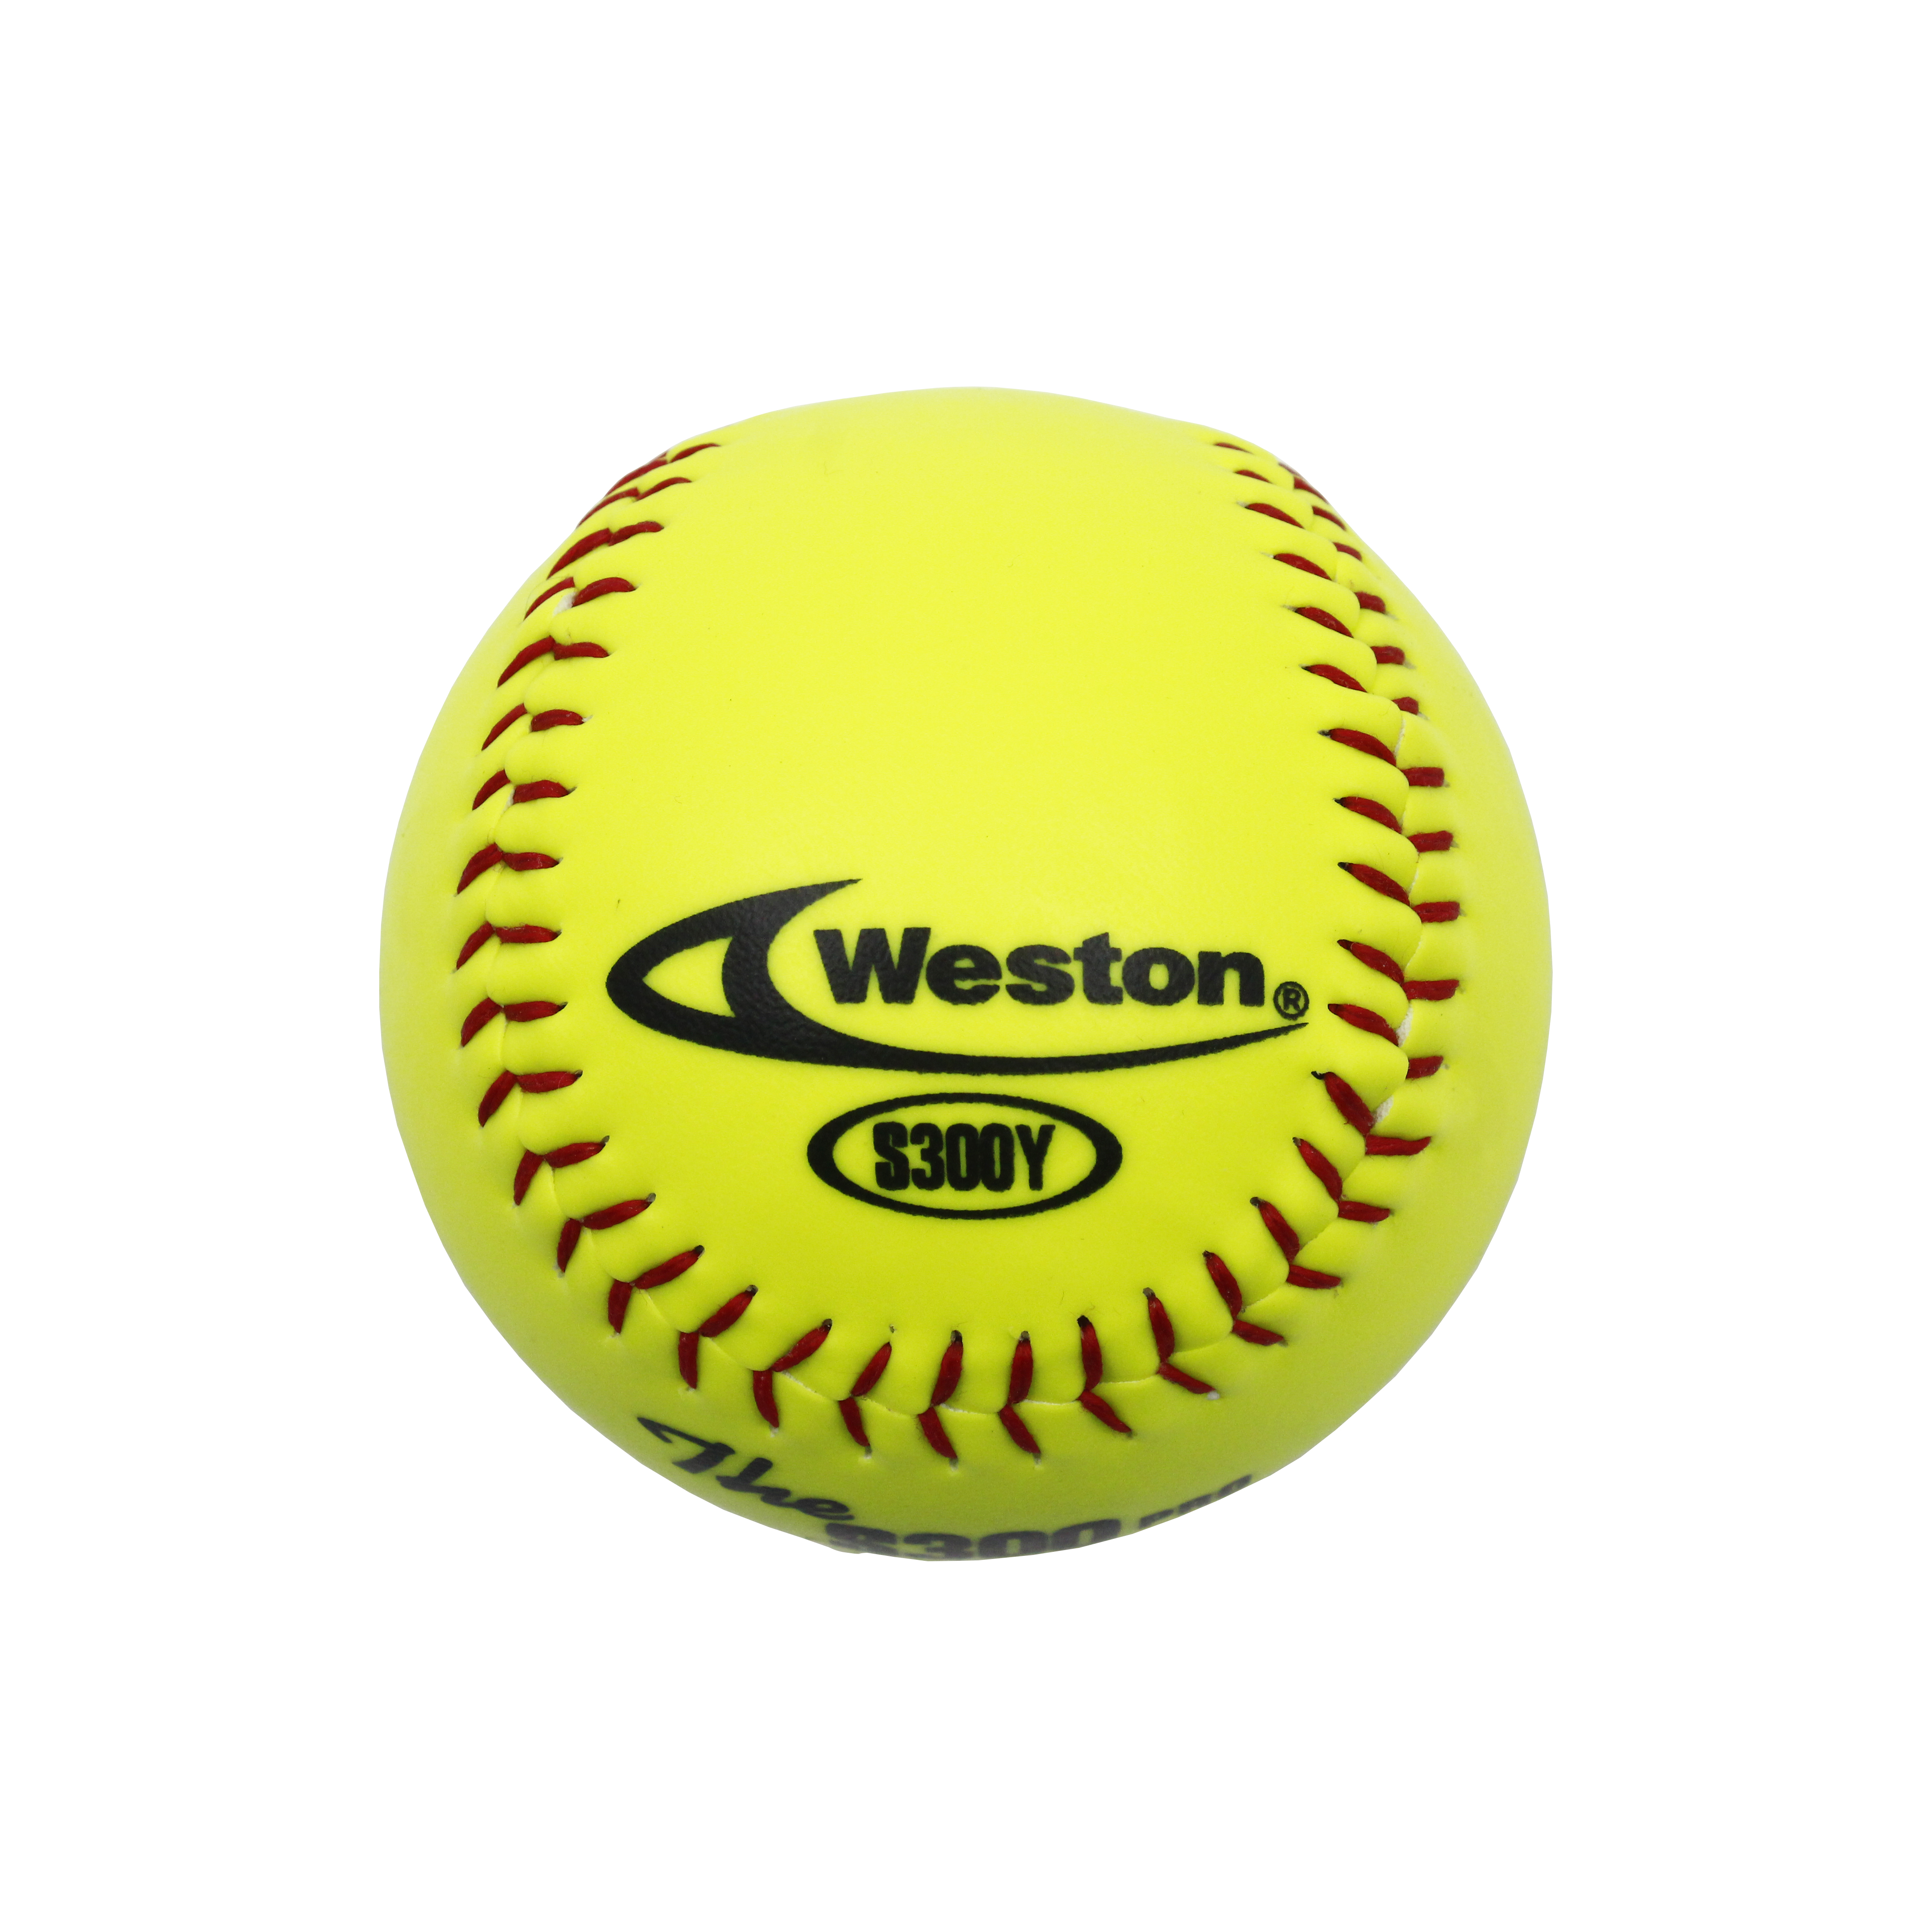 Neupreis: Weston S300Y Softball 12 Zoll, optisch gelbes Leder, hochwertiges Korkzentrum